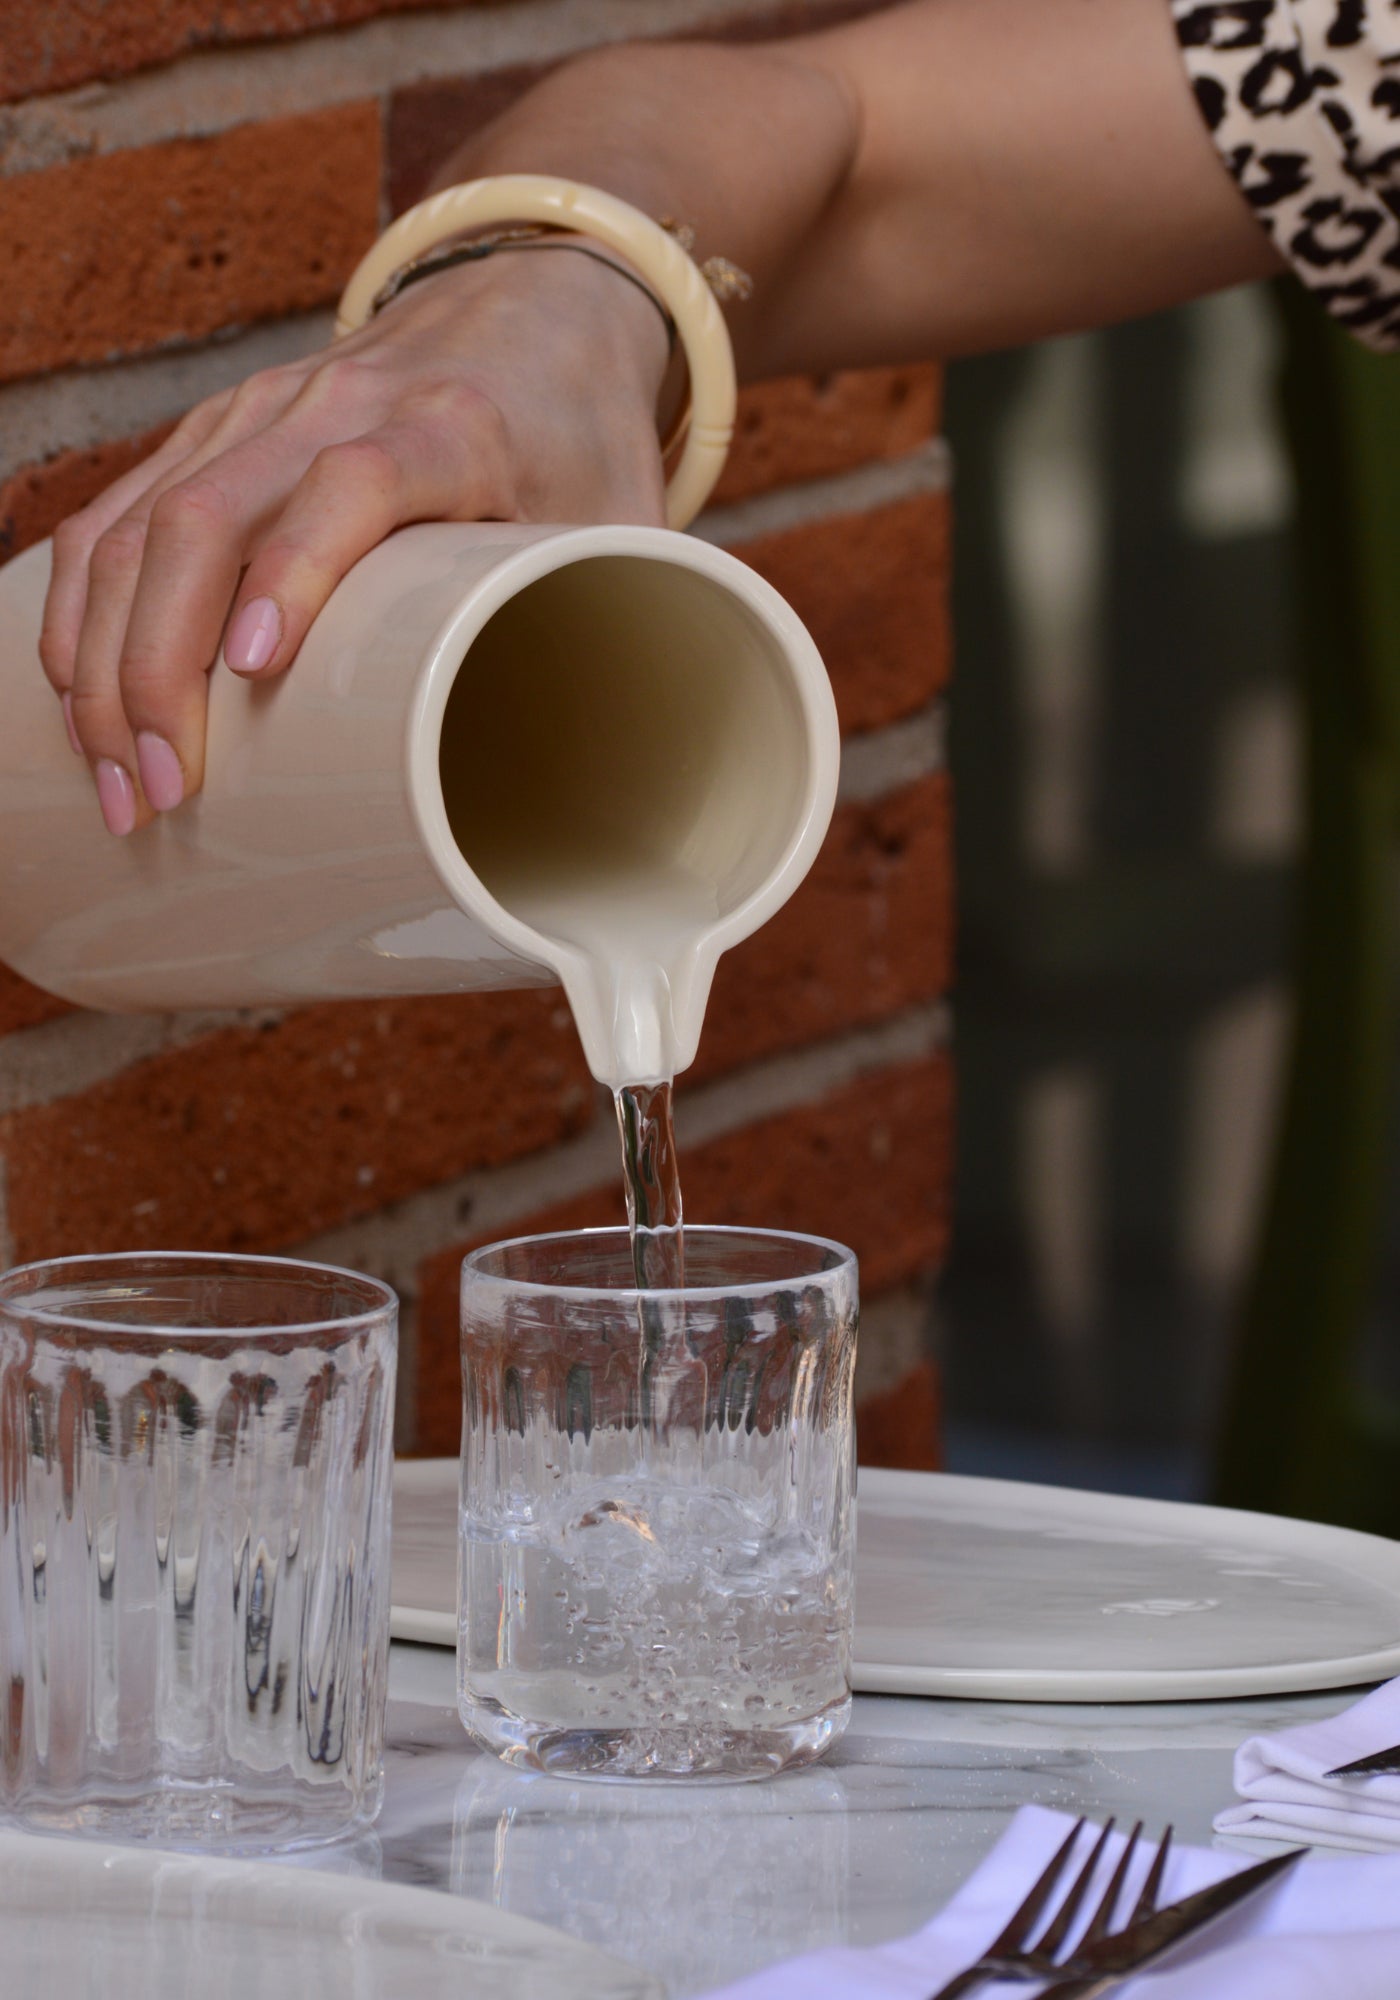 La femme verse dans un verre de l'eau avec le grand pichet en Grès beige de chez Maison Marah